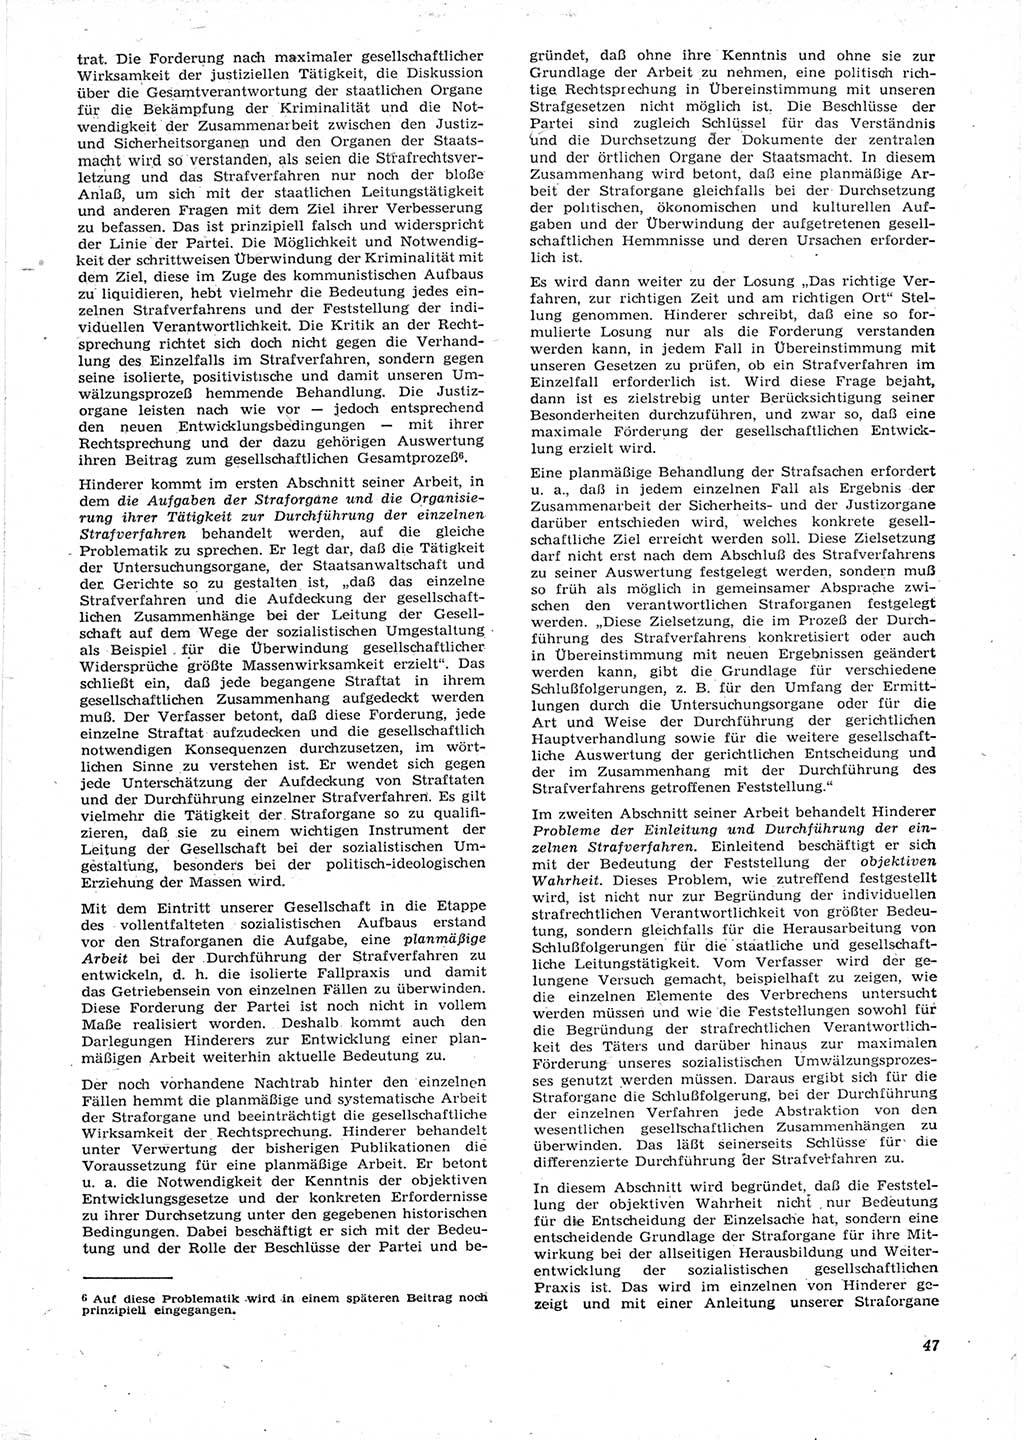 Neue Justiz (NJ), Zeitschrift für Recht und Rechtswissenschaft [Deutsche Demokratische Republik (DDR)], 15. Jahrgang 1961, Seite 47 (NJ DDR 1961, S. 47)